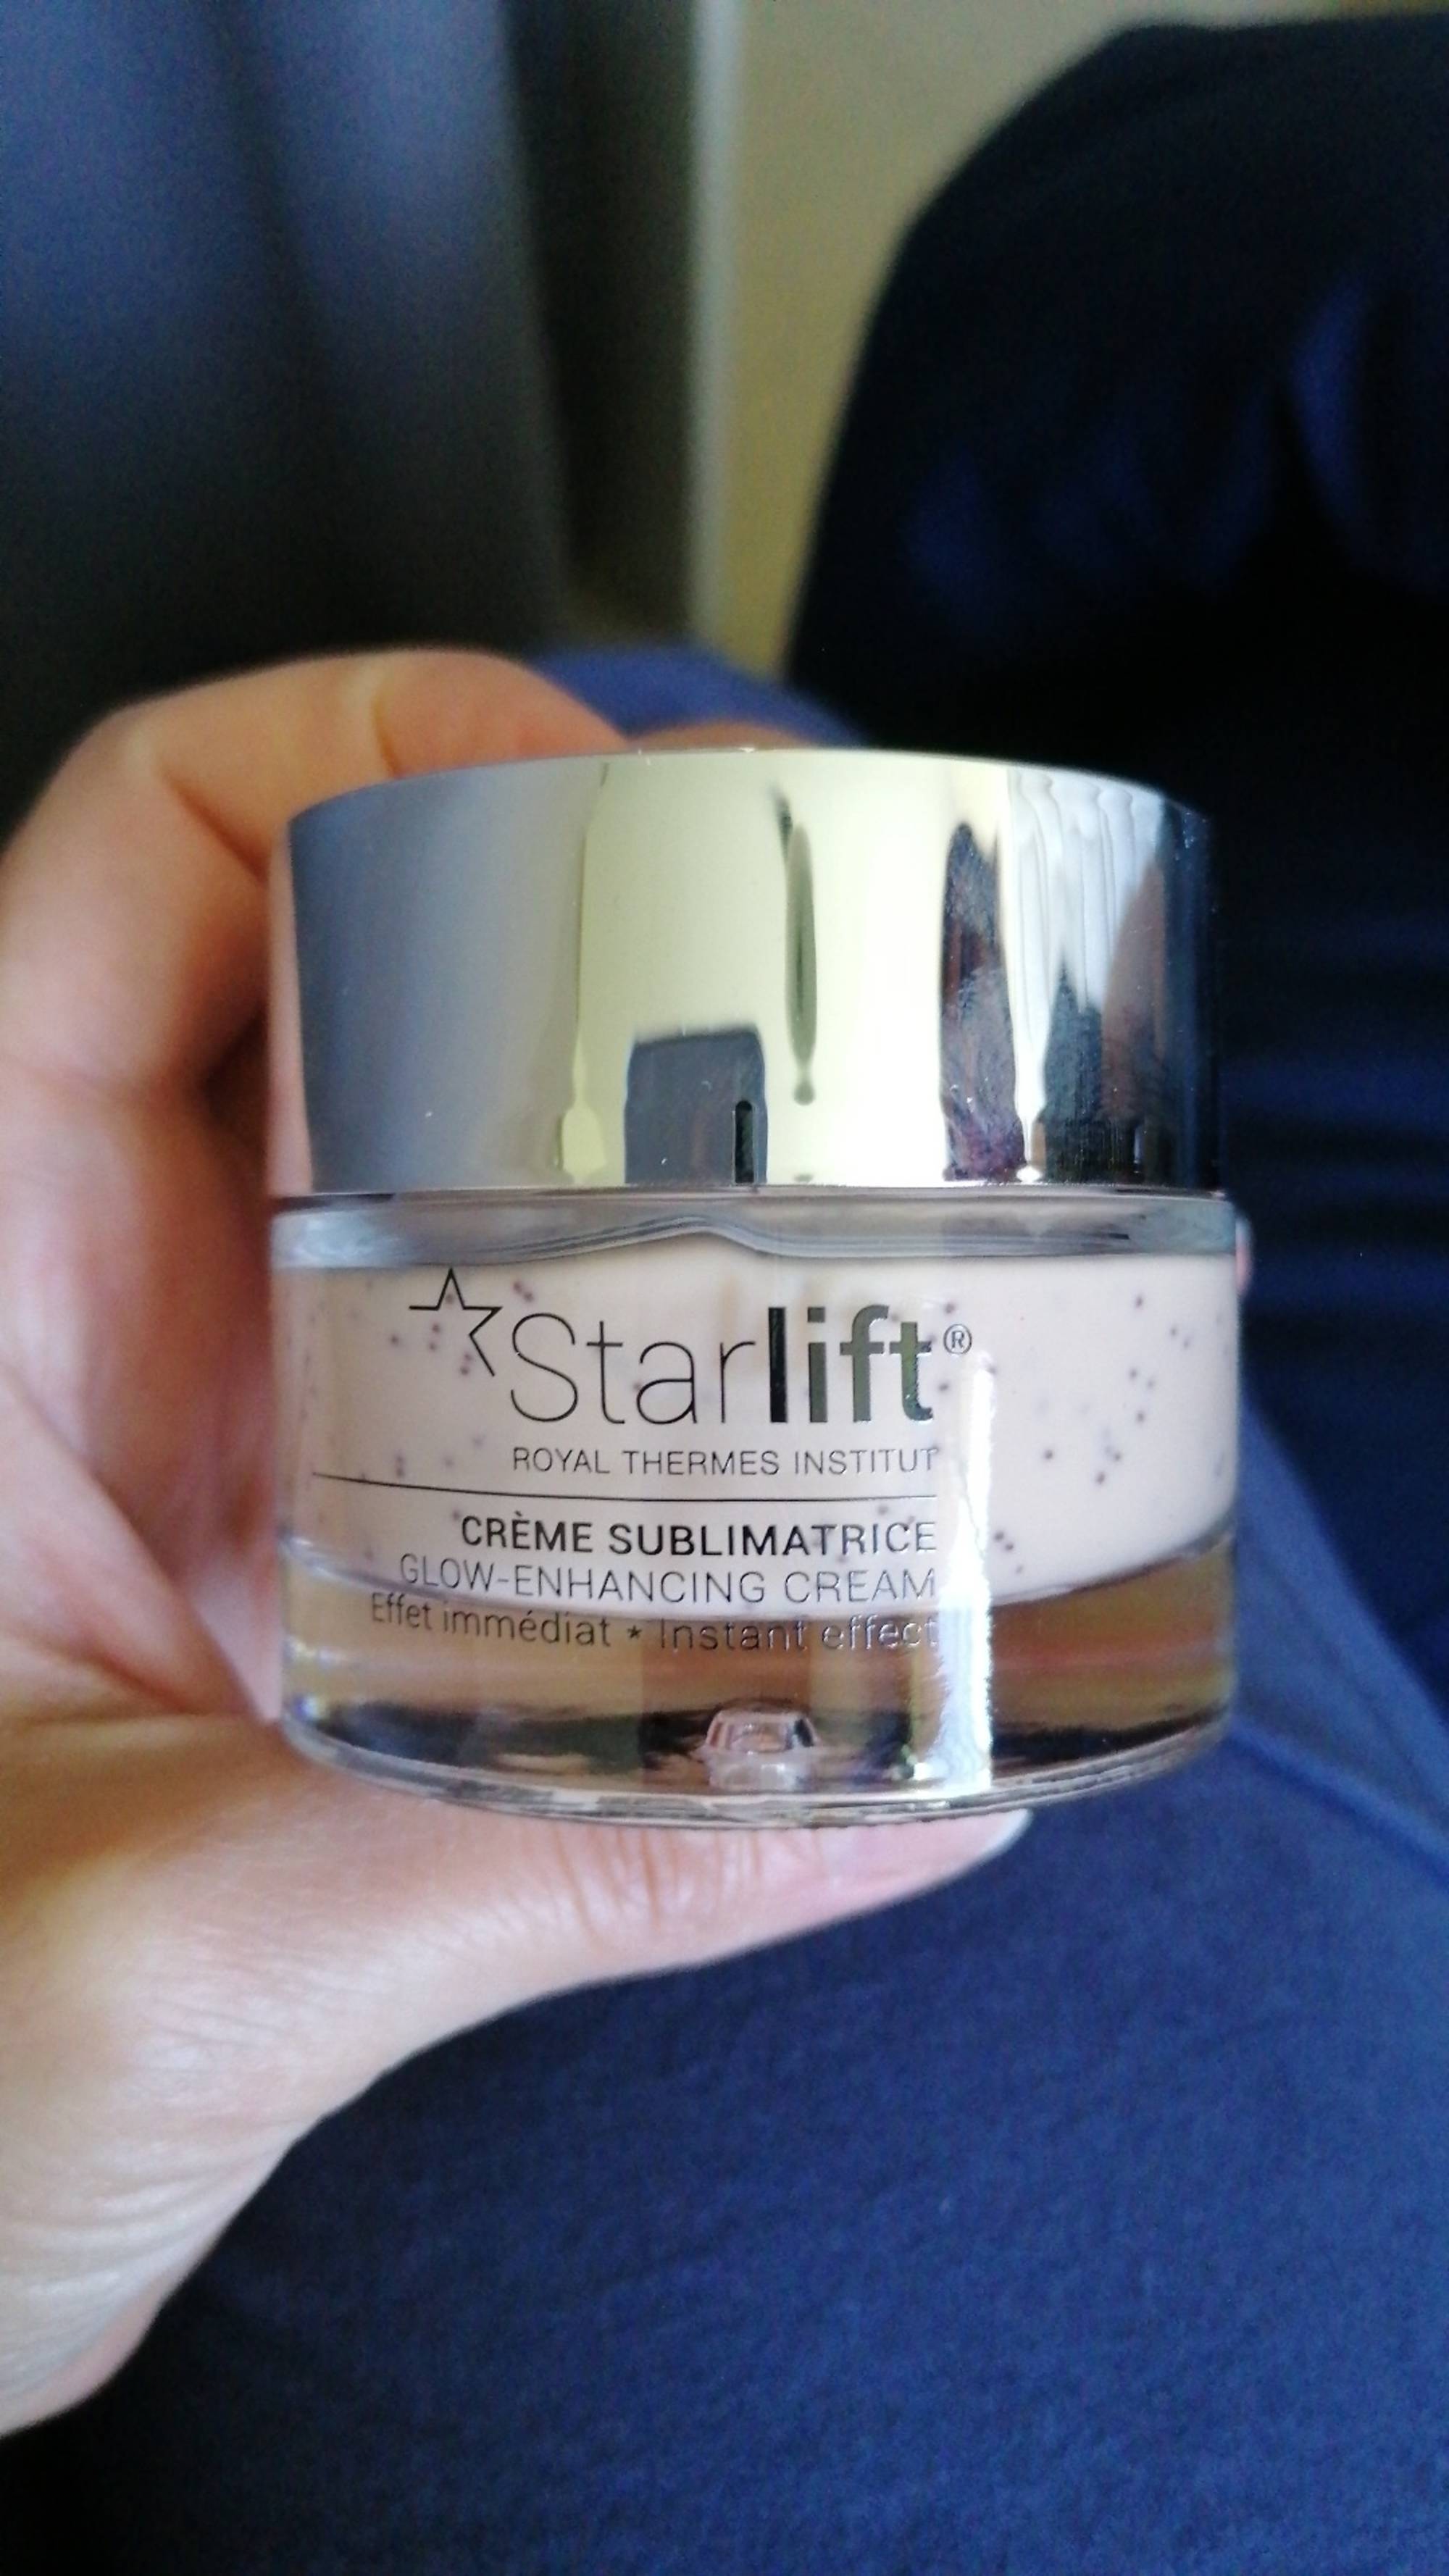 STARLIFT - Crème sublimatrice effet immédiat